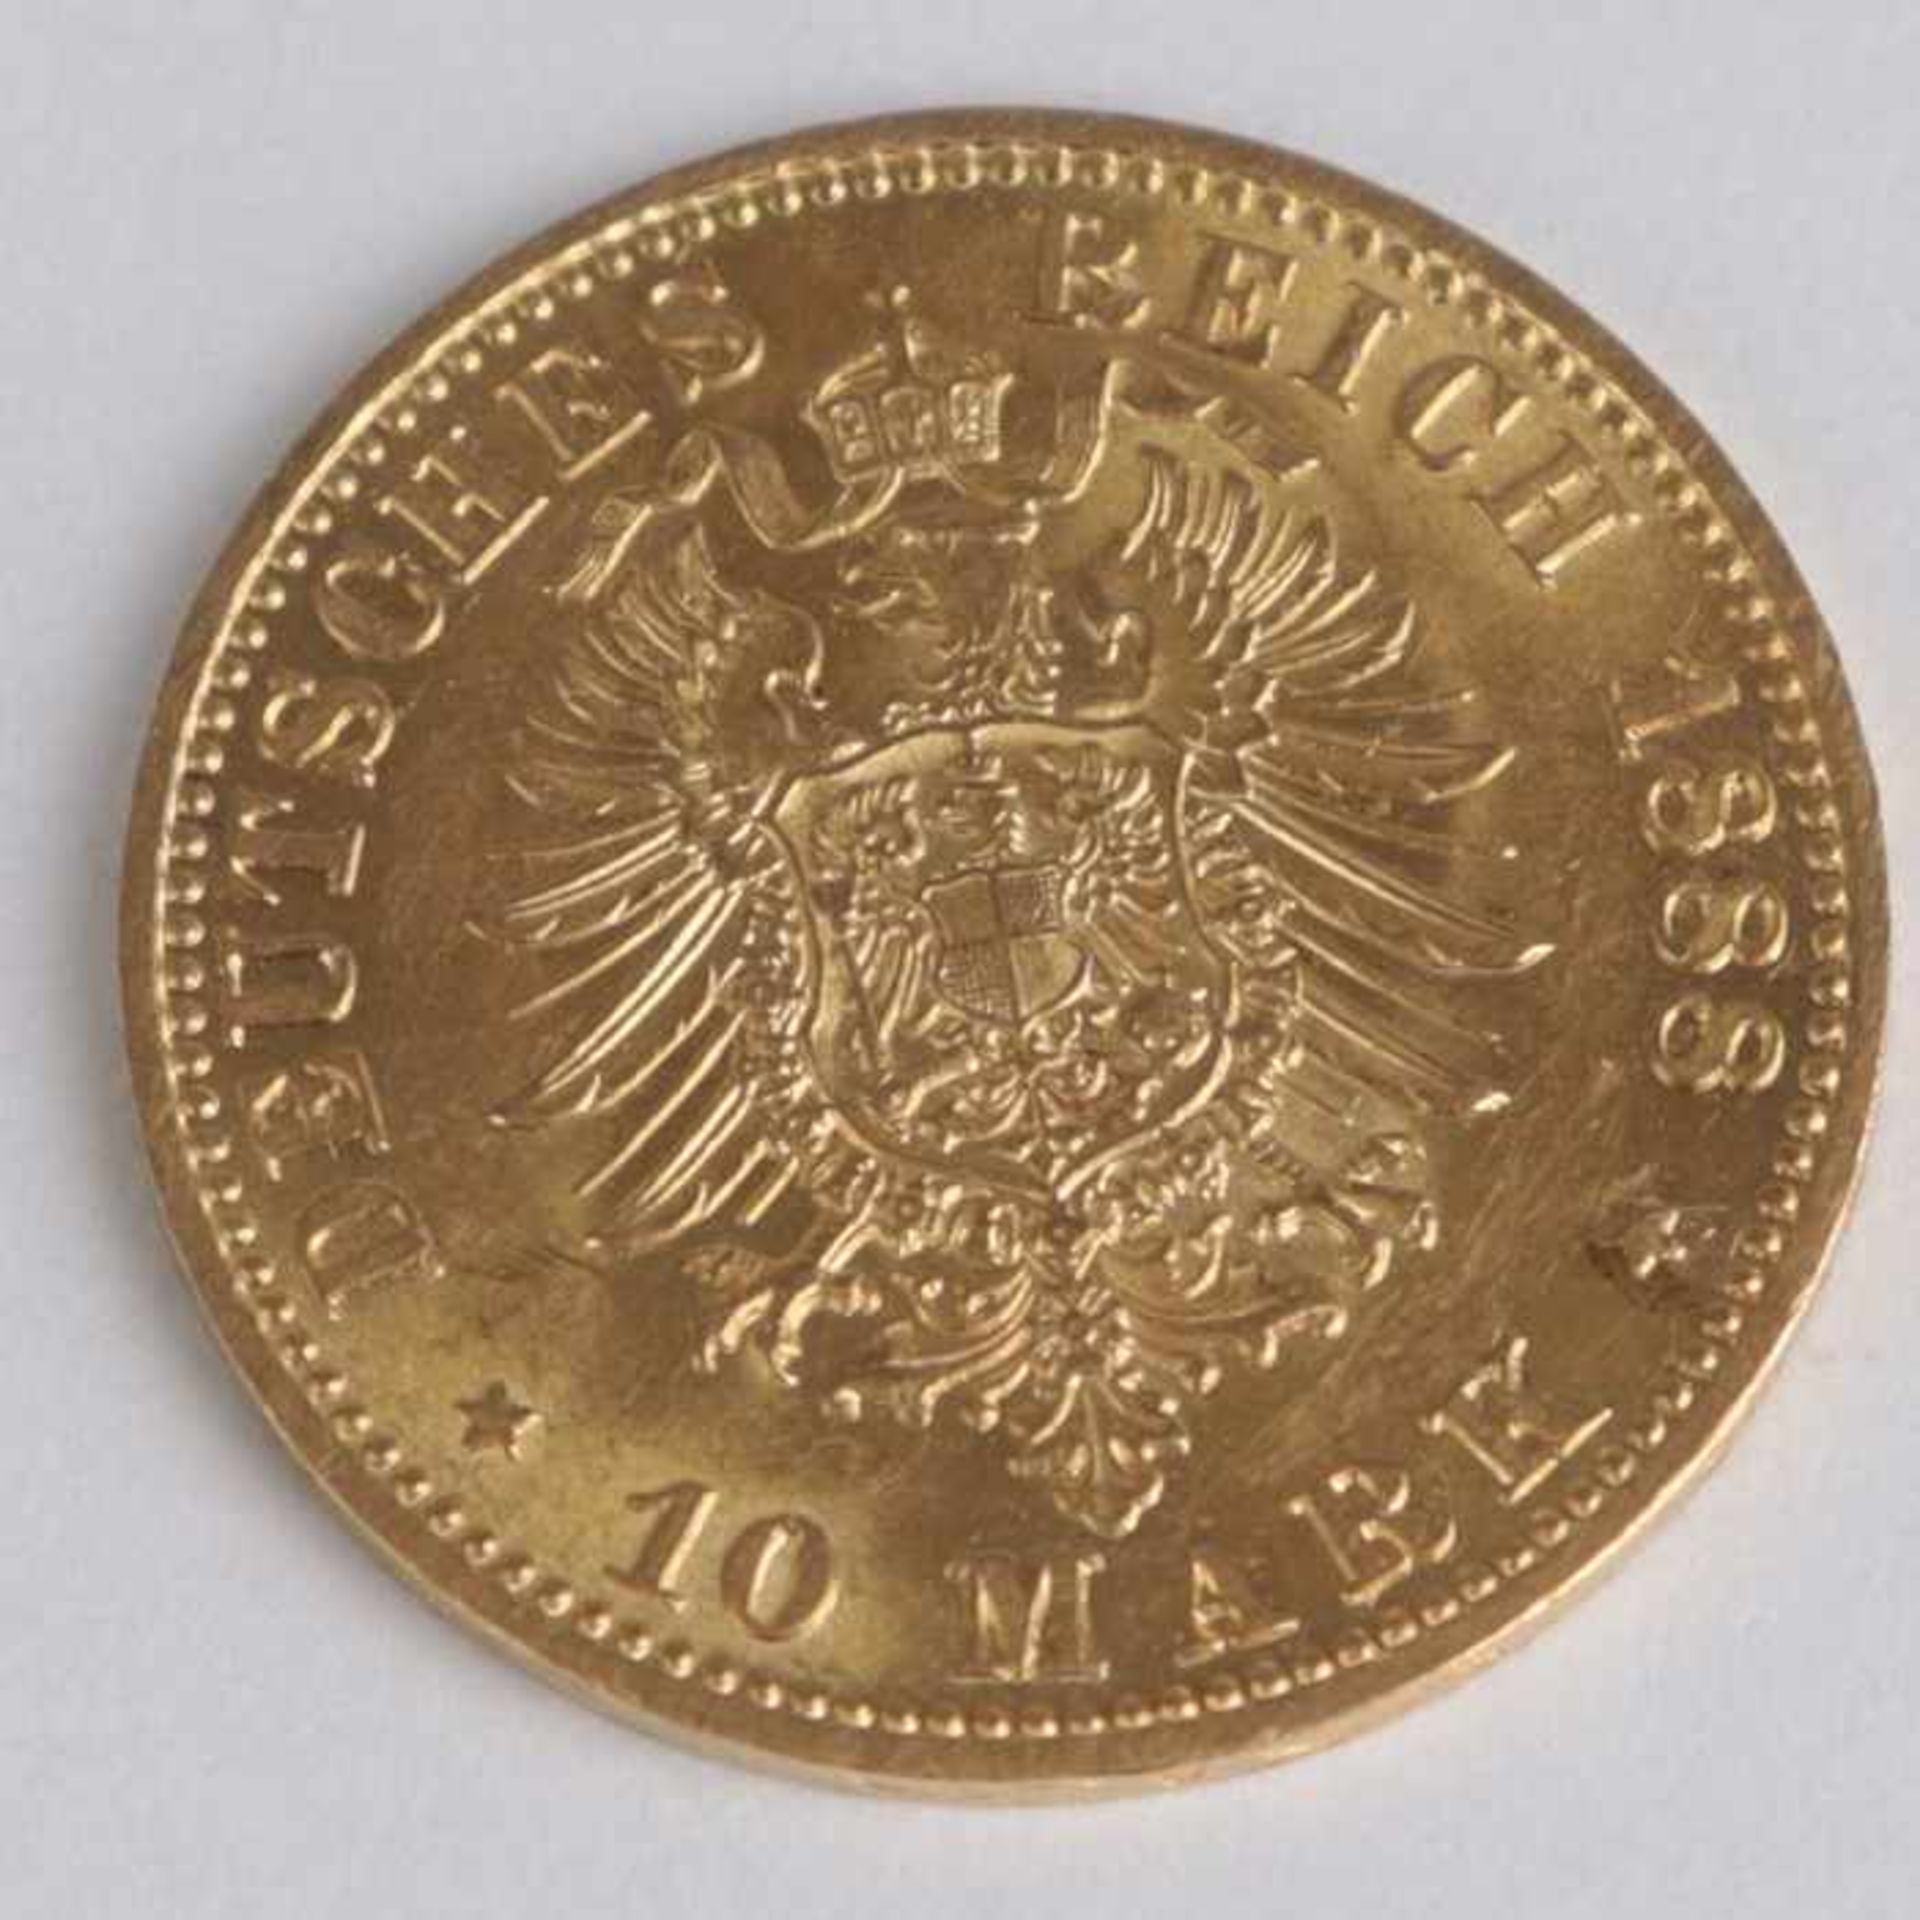 Goldmünze Preussen - 10 MarkFriedrich Deutscher Kaiser König v. Preussen, Deutsches Reich,1888/A, - Image 2 of 2